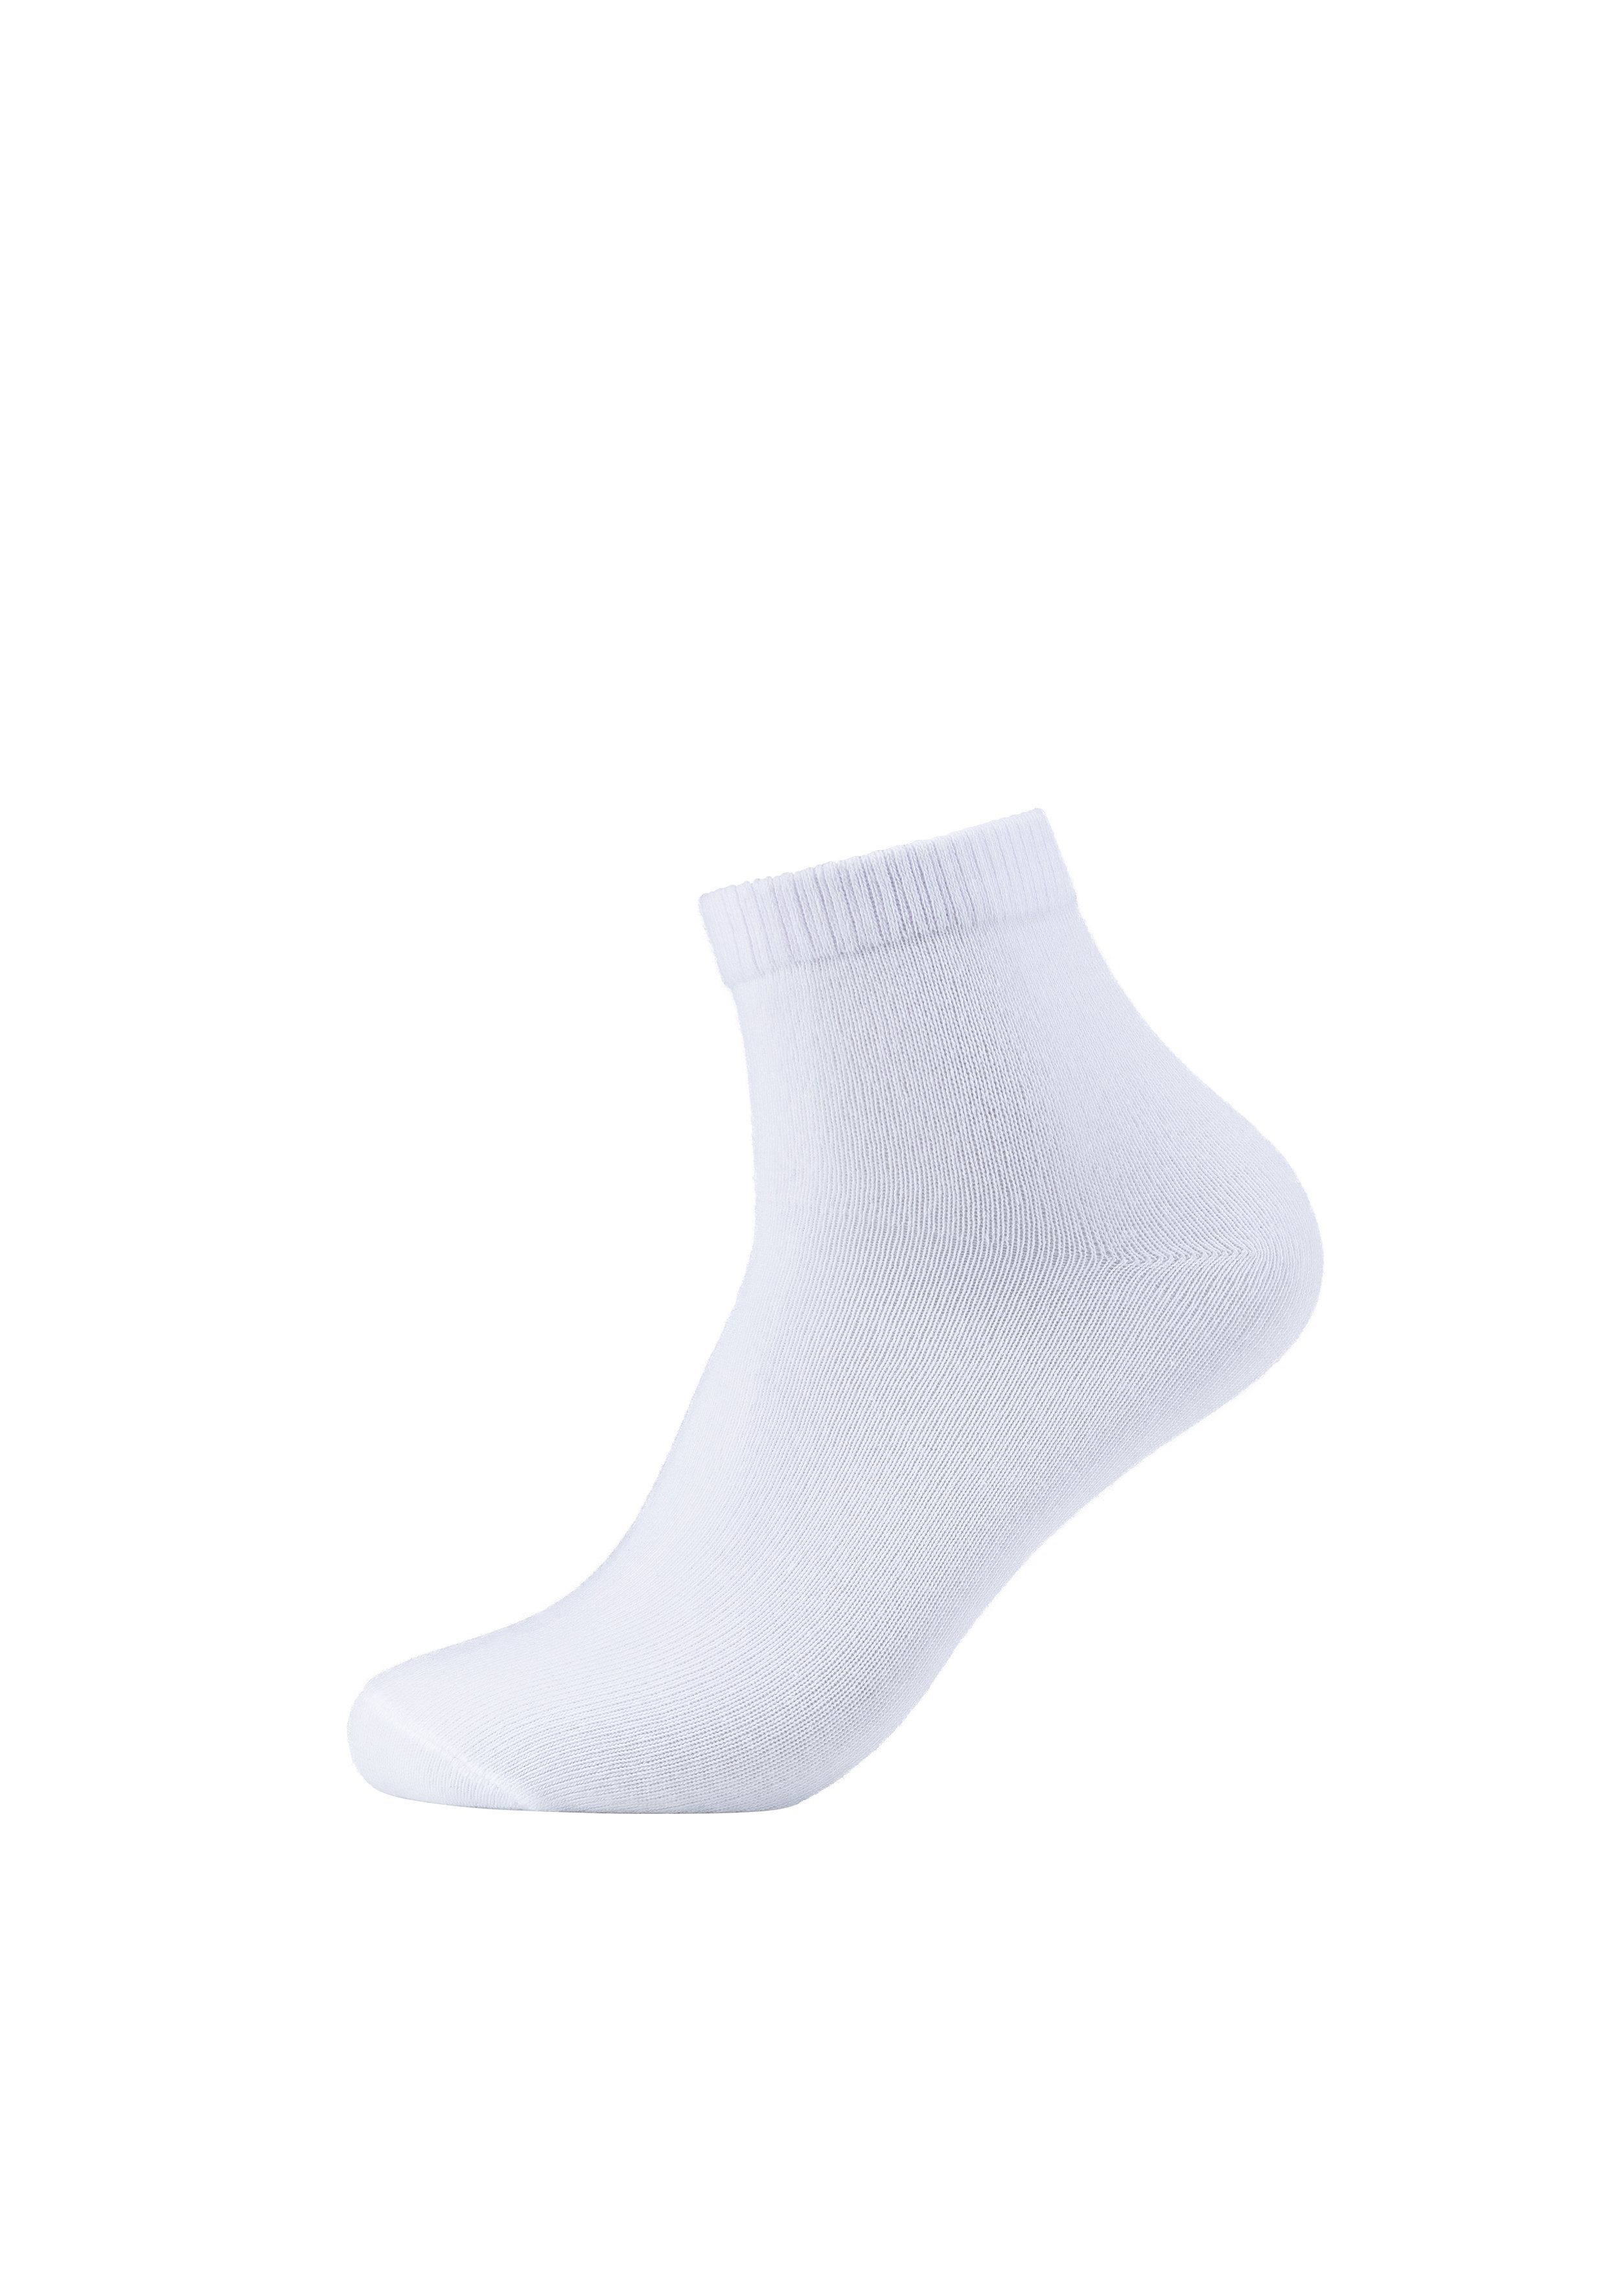 Socken im weiß 8er Pack (8-Paar) beige, praktischen Essentials s.Oliver